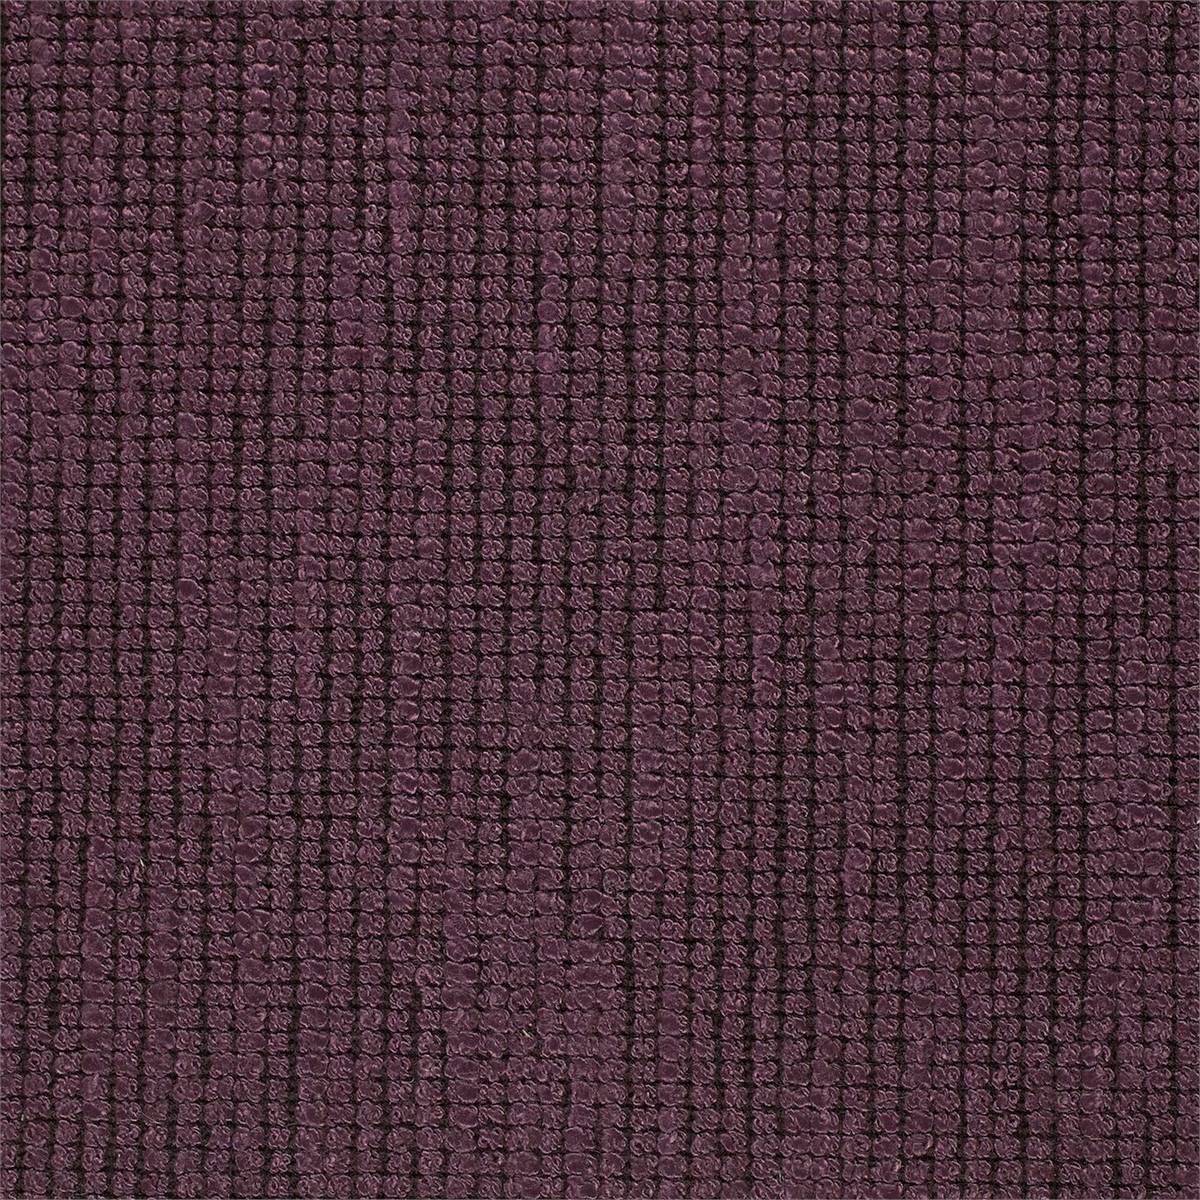 Hanover Aubergine Fabric by Zoffany